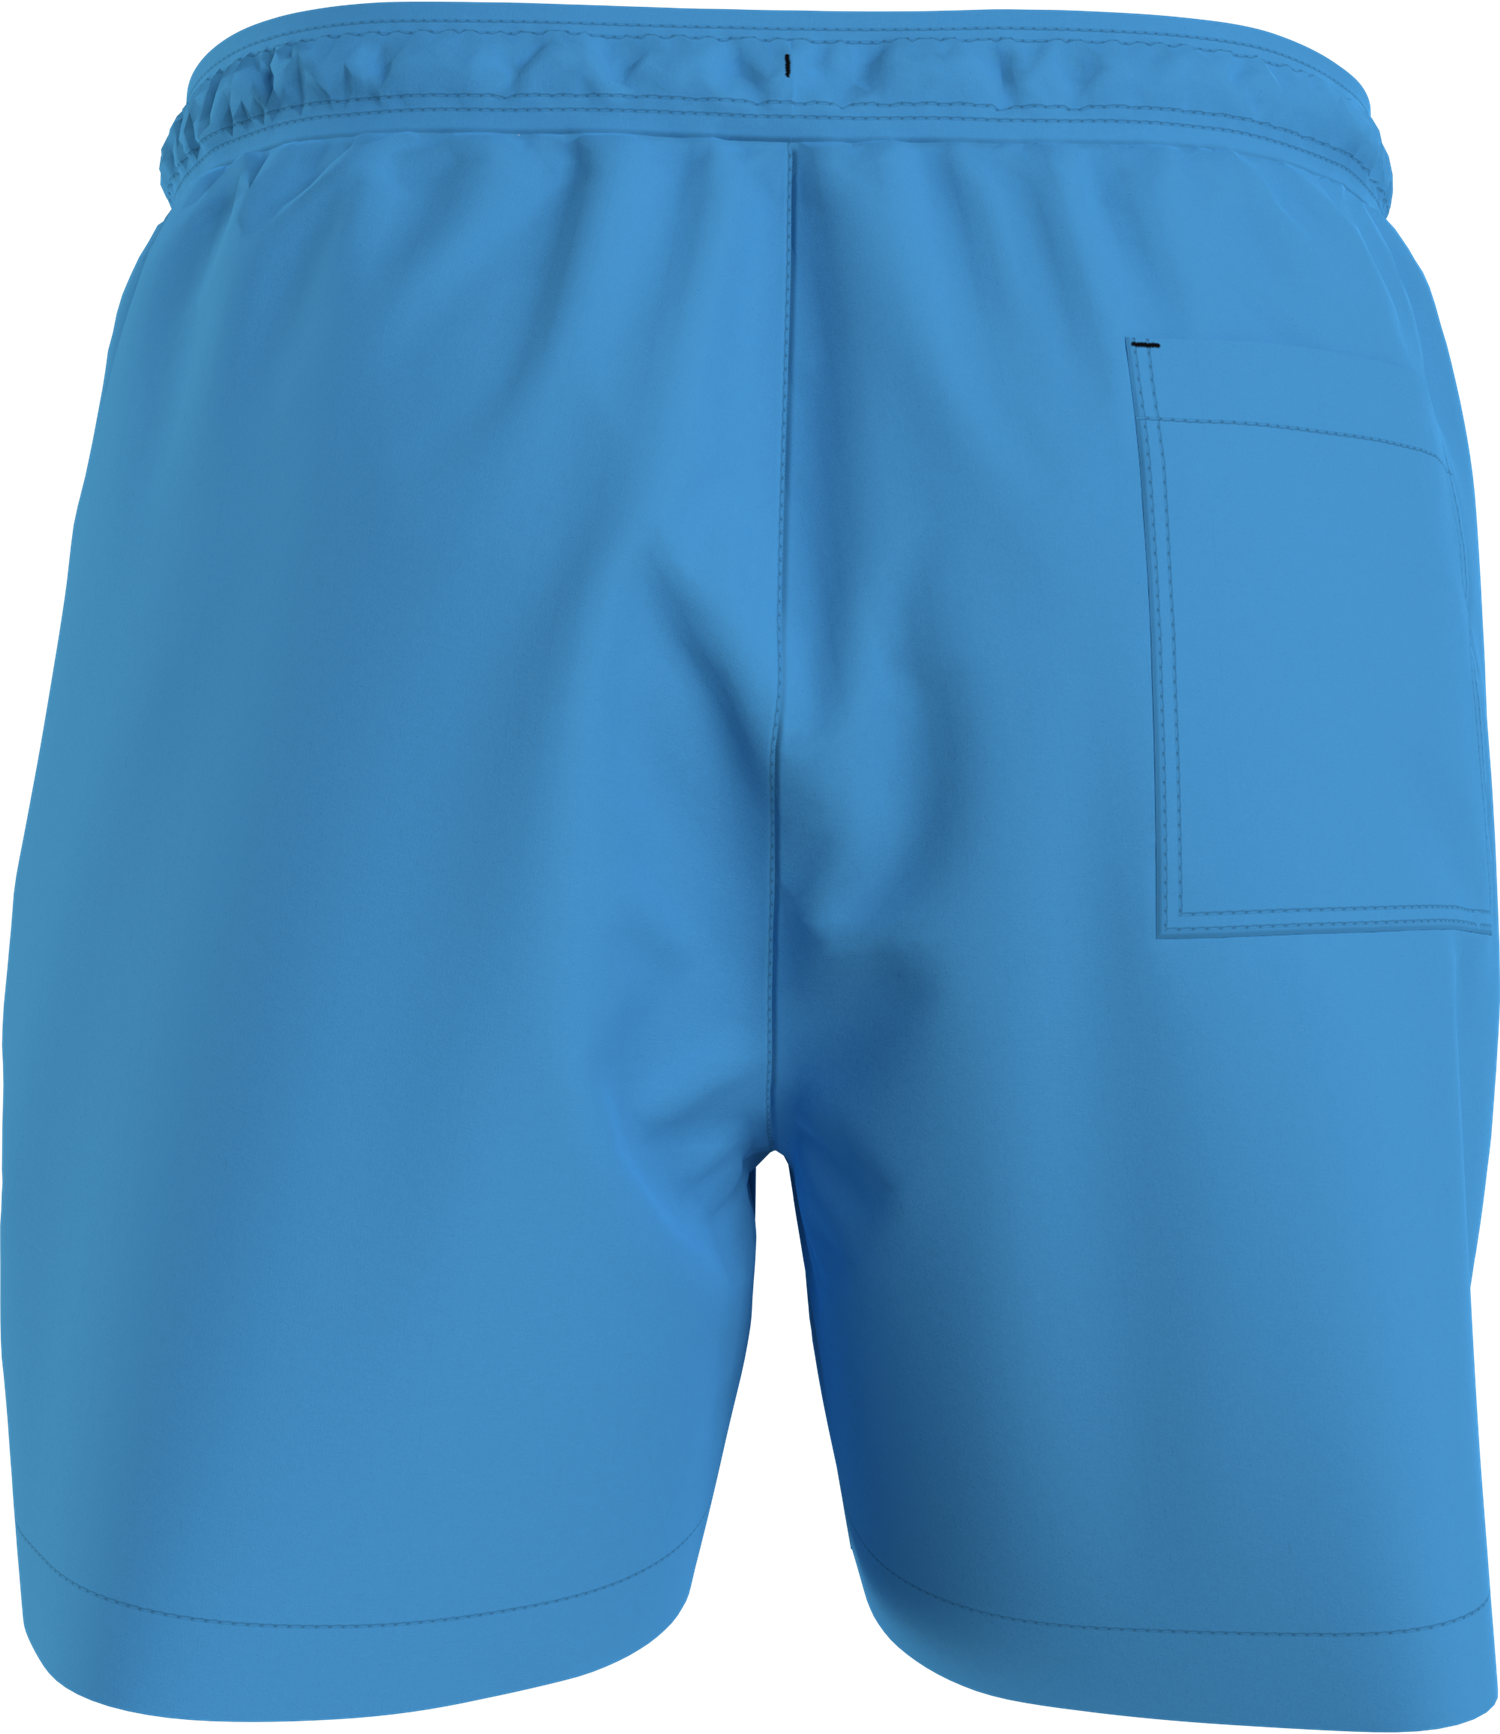 Medium drawstring swim shorts Blue Crush